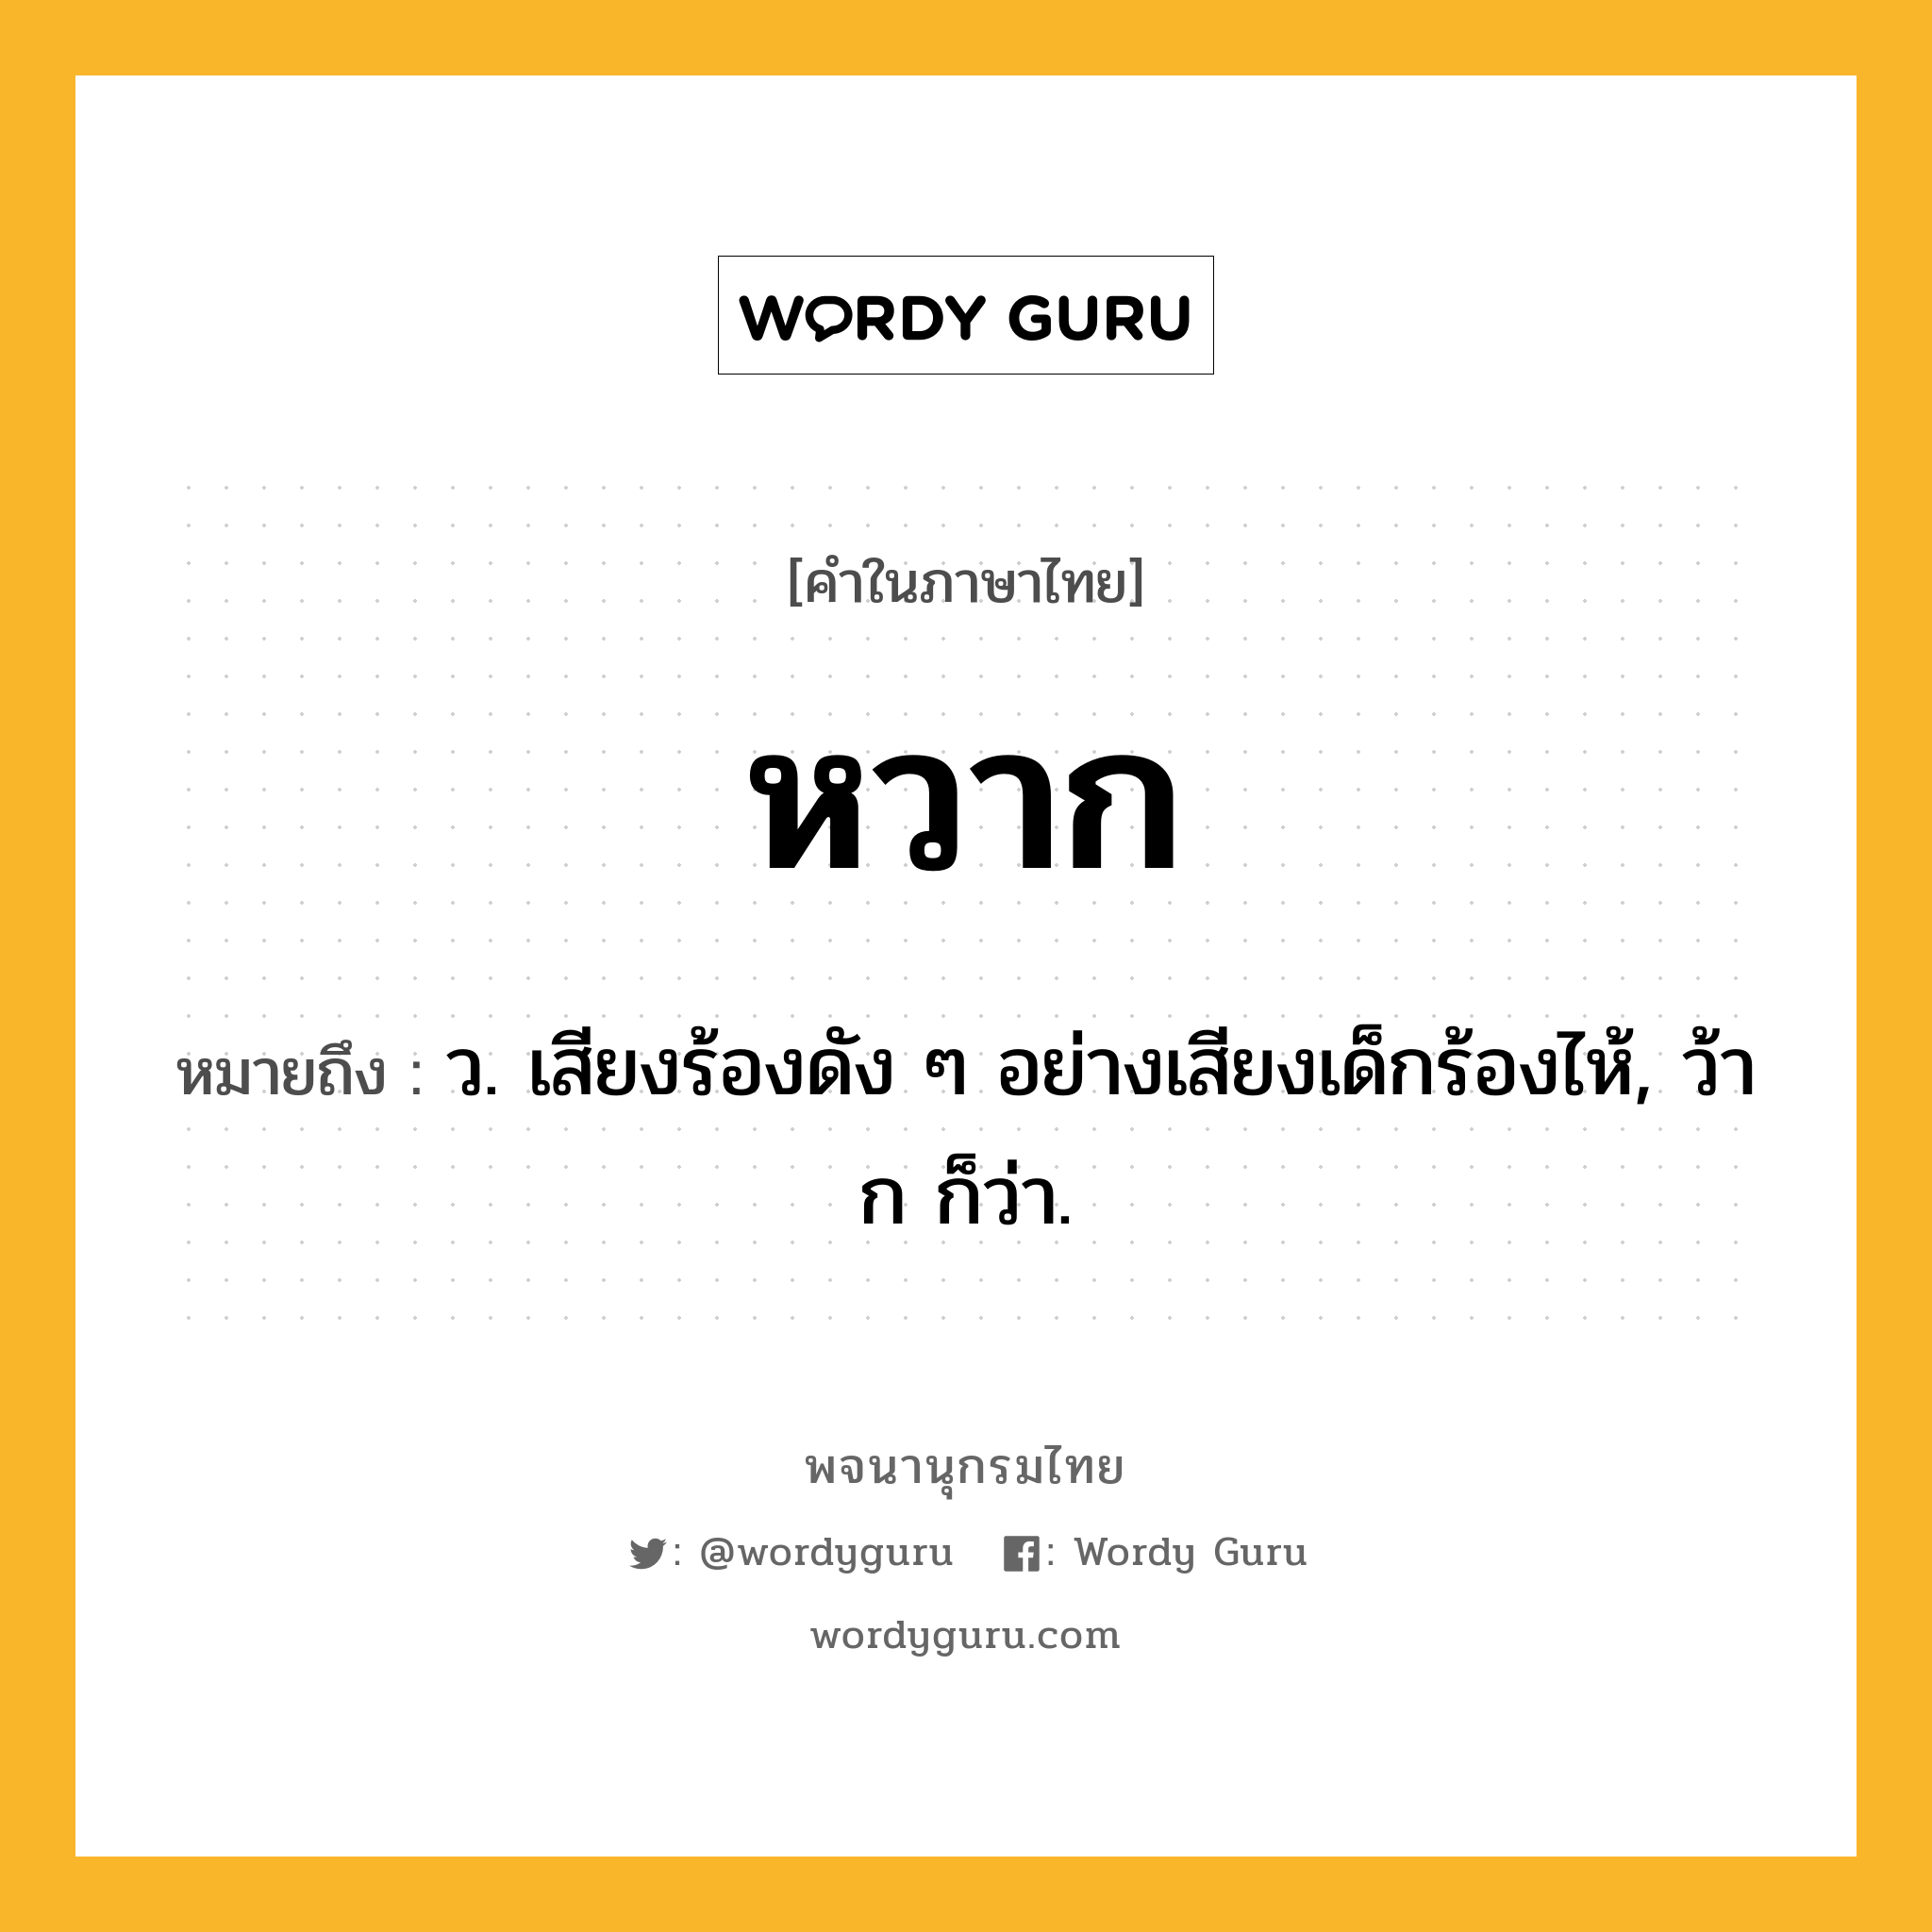 หวาก ความหมาย หมายถึงอะไร?, คำในภาษาไทย หวาก หมายถึง ว. เสียงร้องดัง ๆ อย่างเสียงเด็กร้องไห้, ว้าก ก็ว่า.